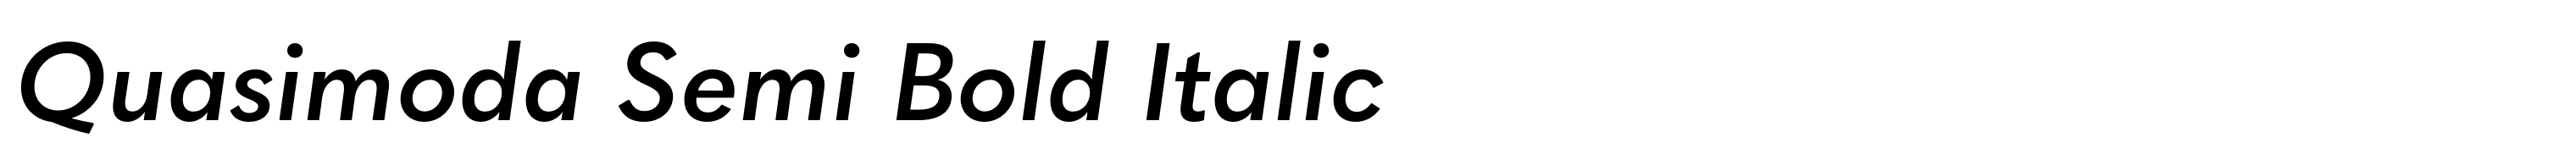 Quasimoda Semi Bold Italic